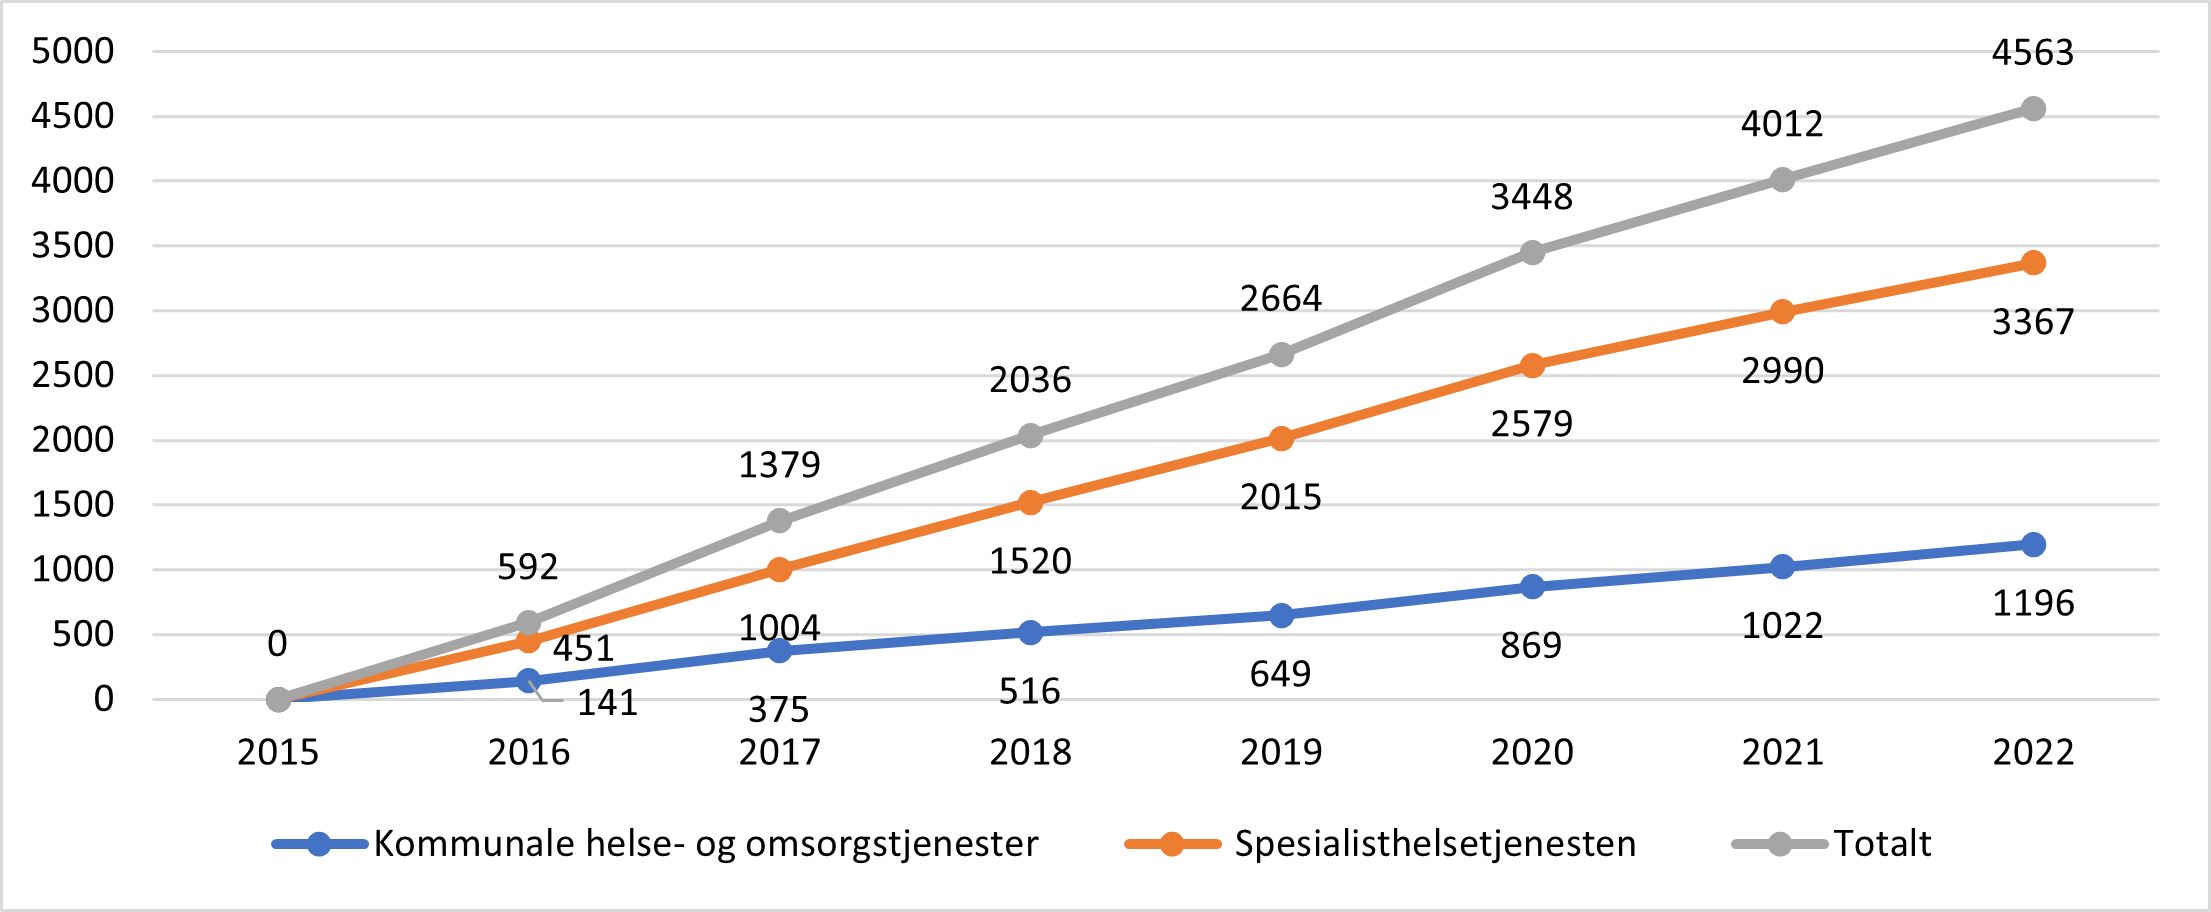 Endring i antall avtalte legeårsverk i spesialisthelsetjenesten sammenholdt med avtalte legeårsverk i kommunale helse og omsorgstjenester. 2015 til 2022.